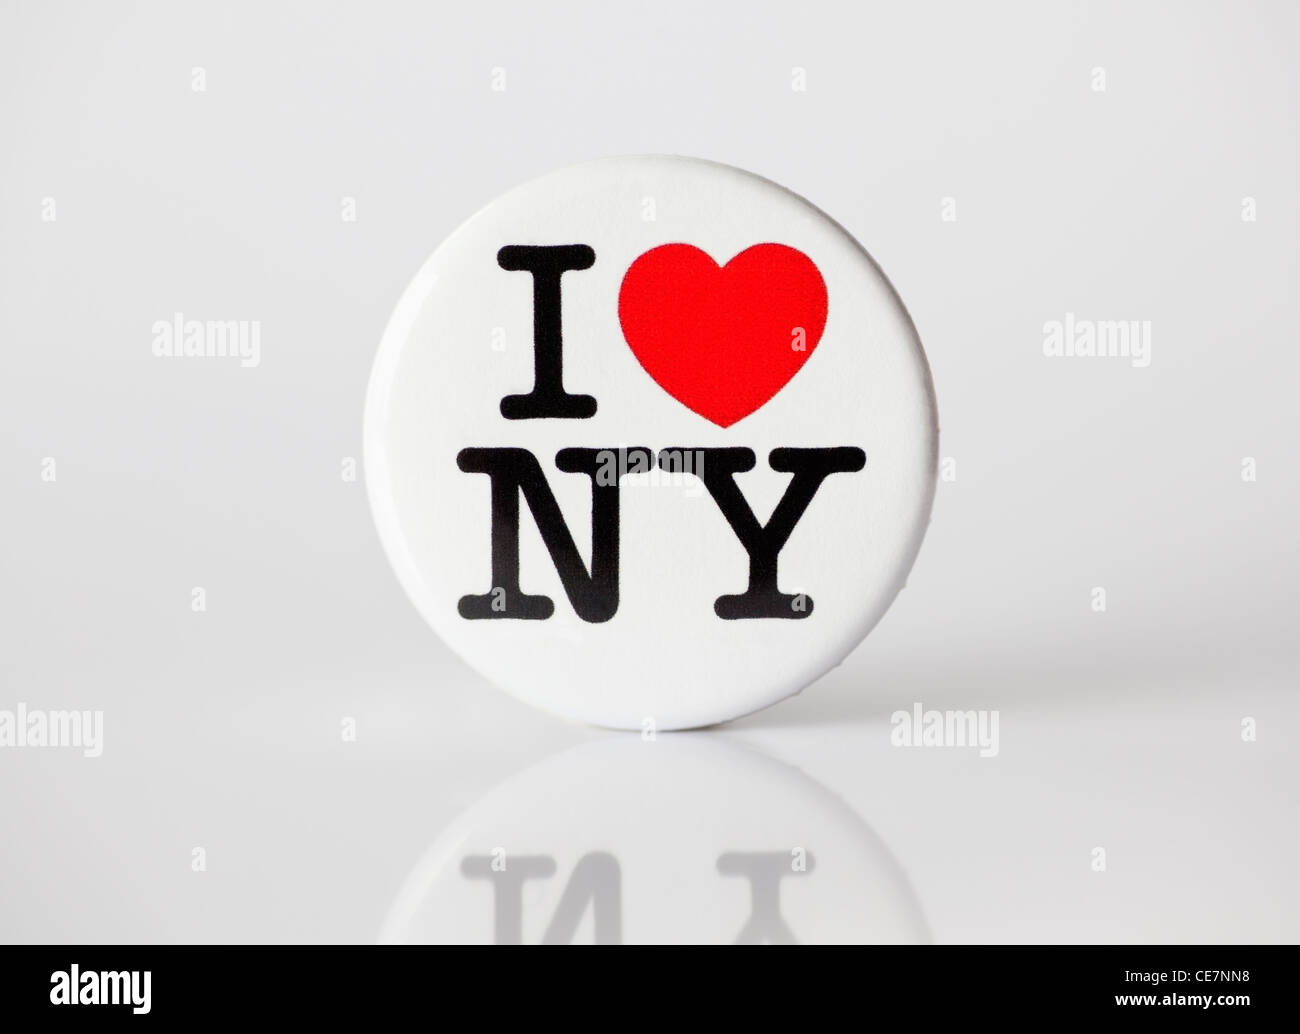 Münster, Allemagne - le 28 janvier 2012 : photo montre le célèbre "i love ny" logo de la ville de new york, imprimé sur un badge. Banque D'Images